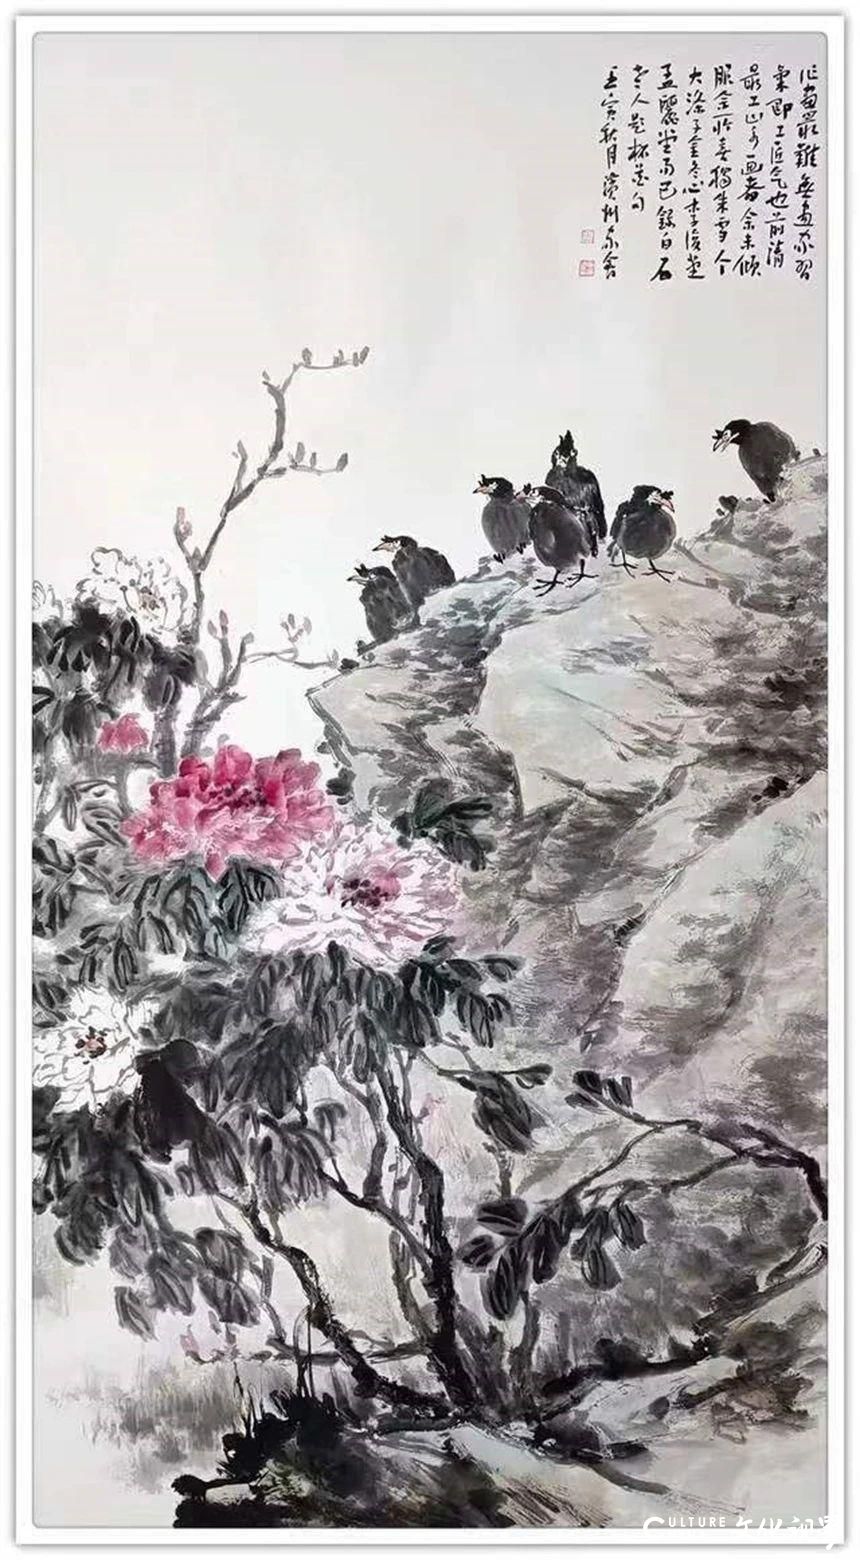 笔墨古拙 意向纵横——著名画家张家会对中国画的探索与坚守